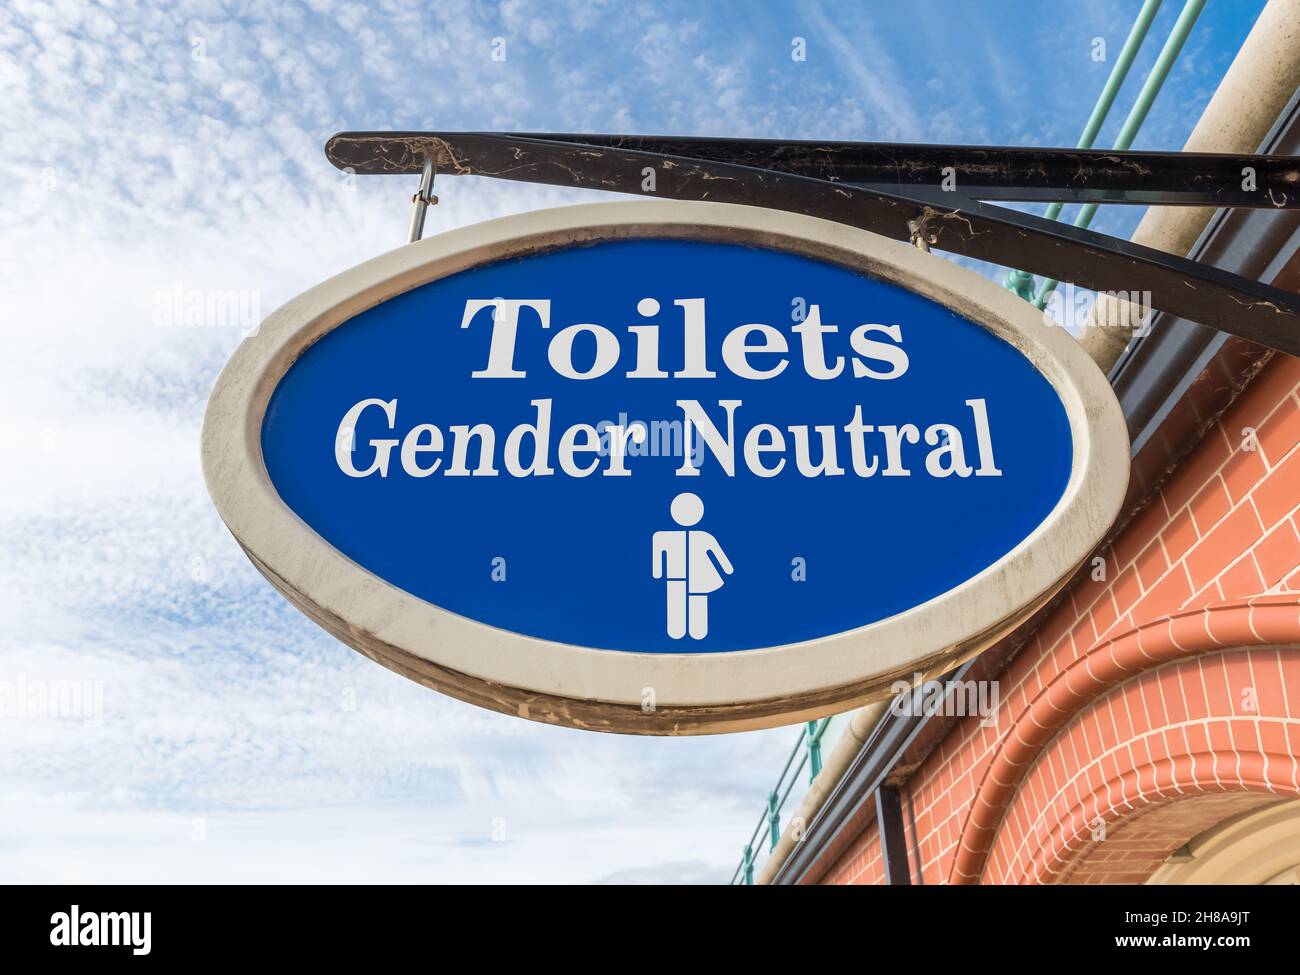 Aufhängeschild für öffentliche Toiletten für geschlechtsneutrale oder geschlechtsfreie Menschen. Fiktives Zeichen, digital vom Original verändert. Stockfoto